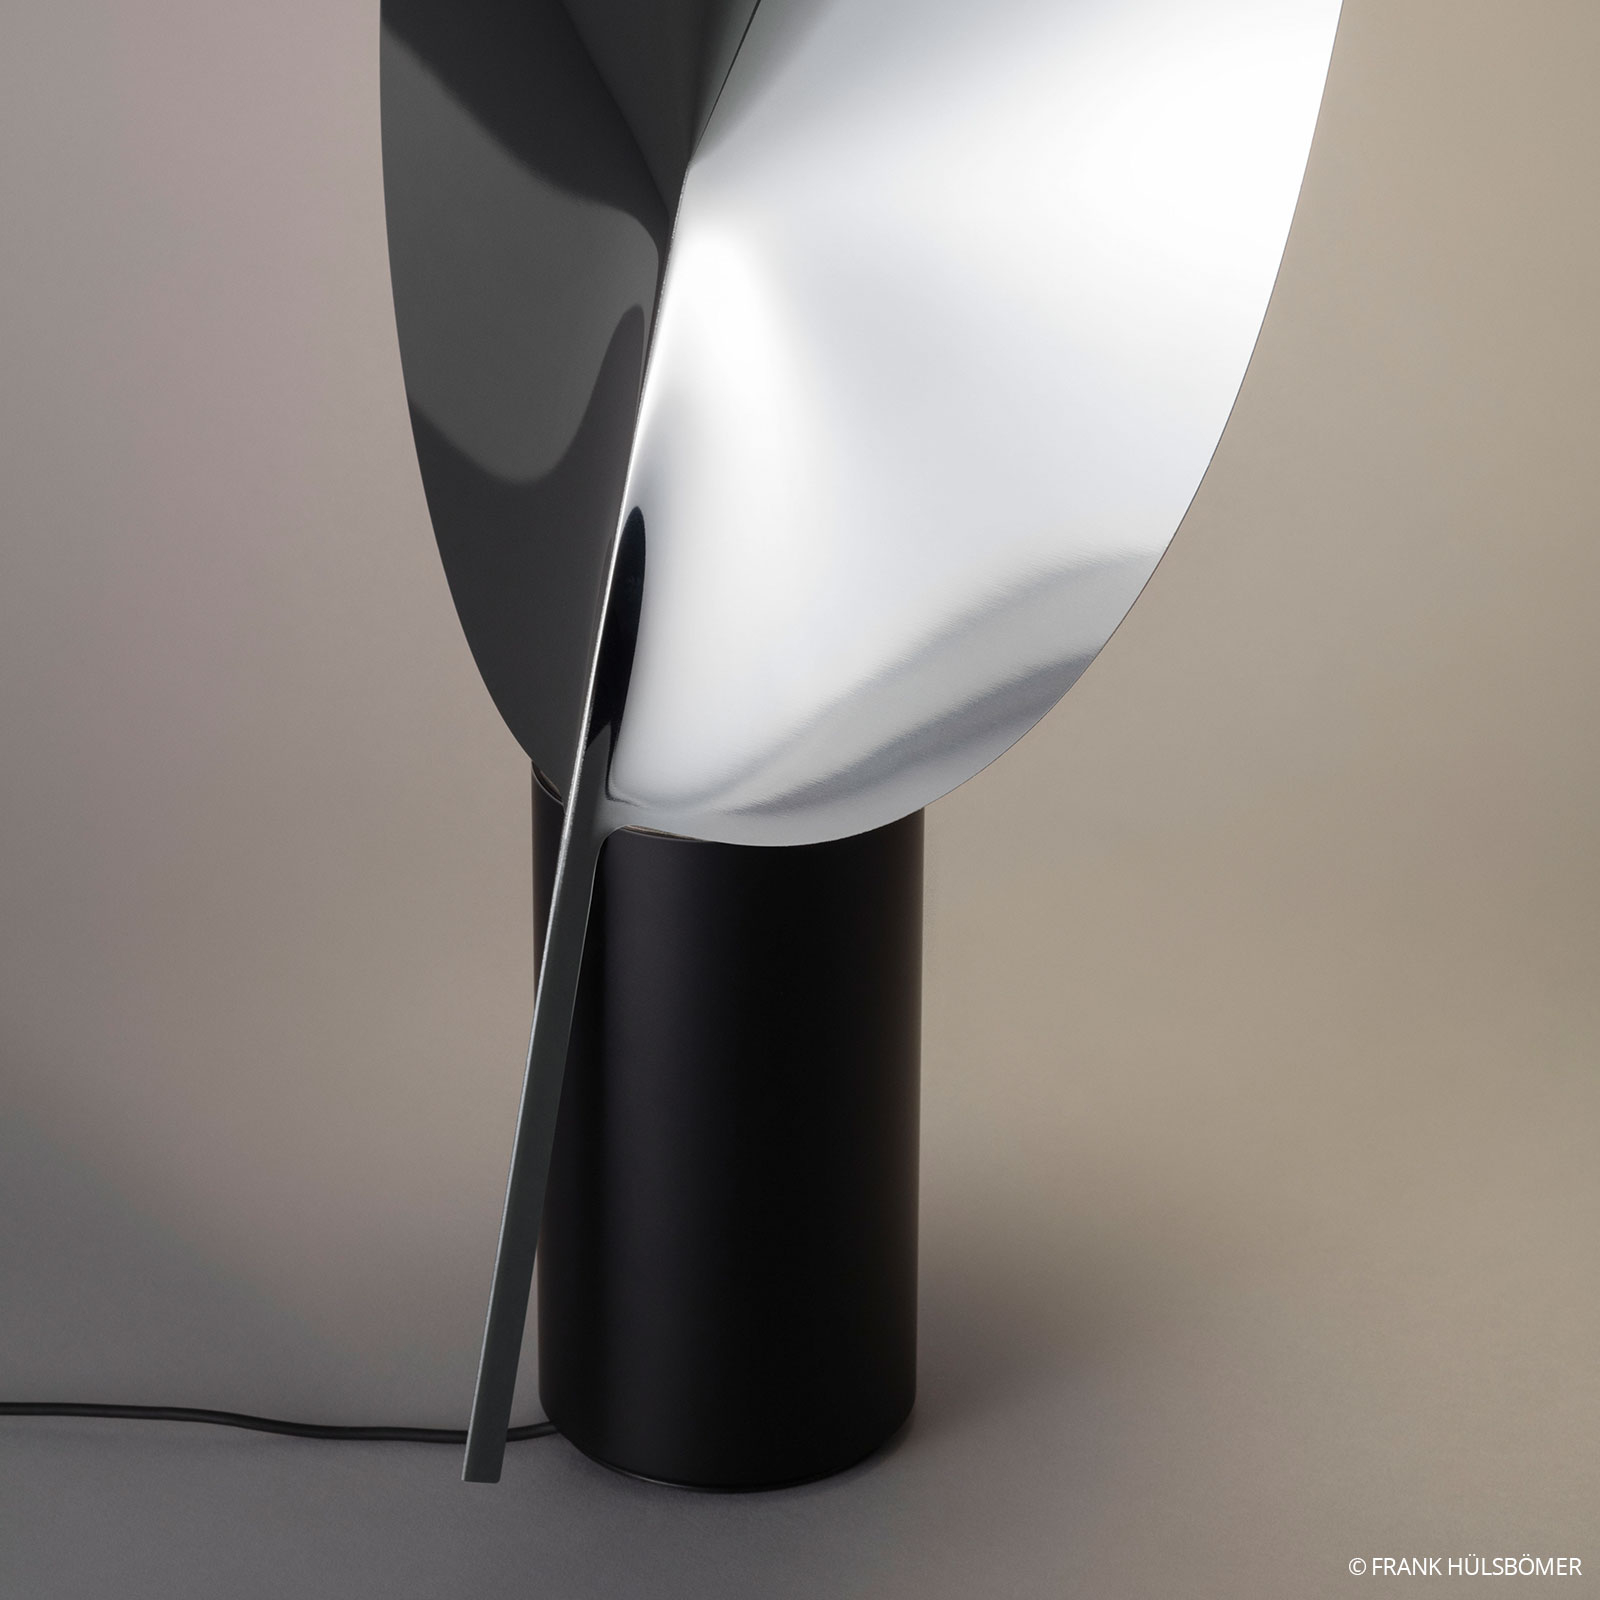 FLOS Serena - LED-bordlampe, krom, kan dæmpes